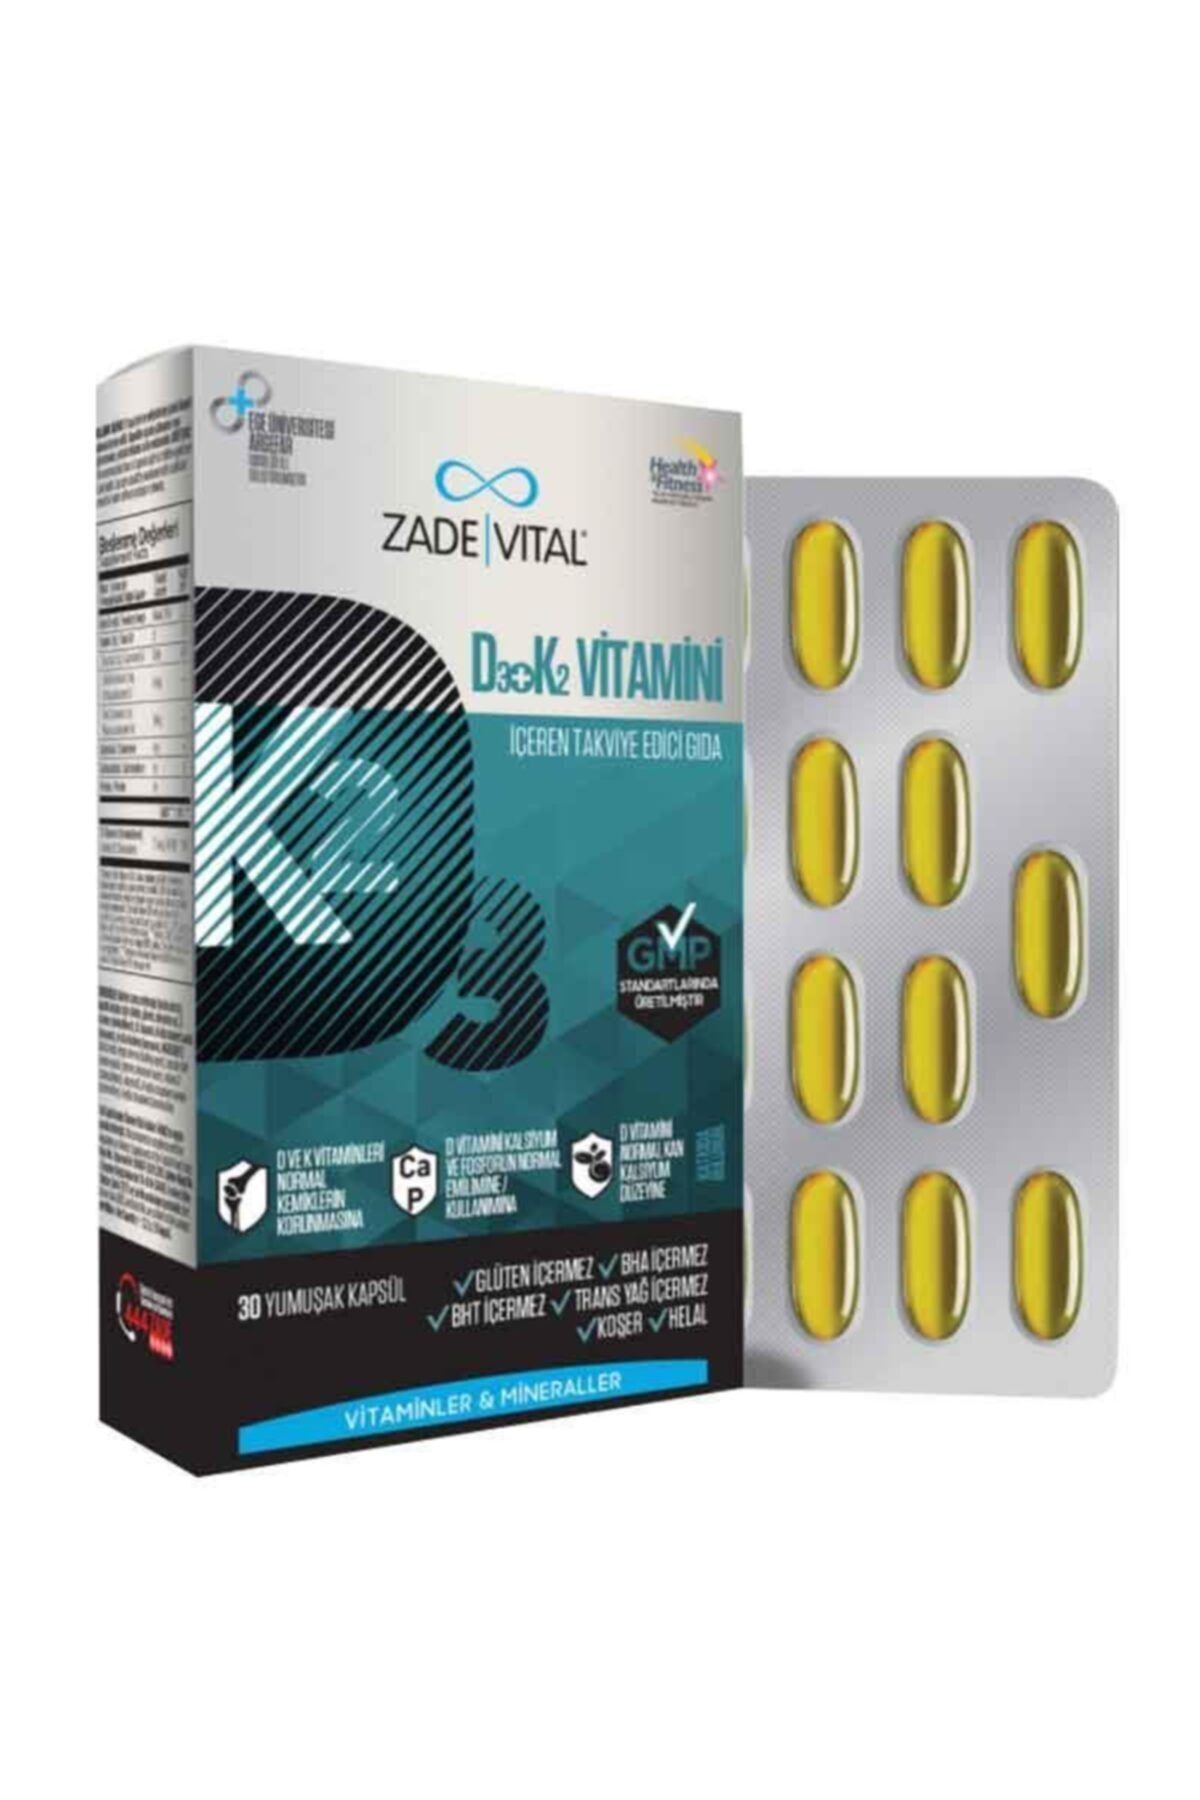 Zade Vital D3 + K2 Vitamini Içeren Takviye Edici Gıda 30 Yumuşak Kapsül